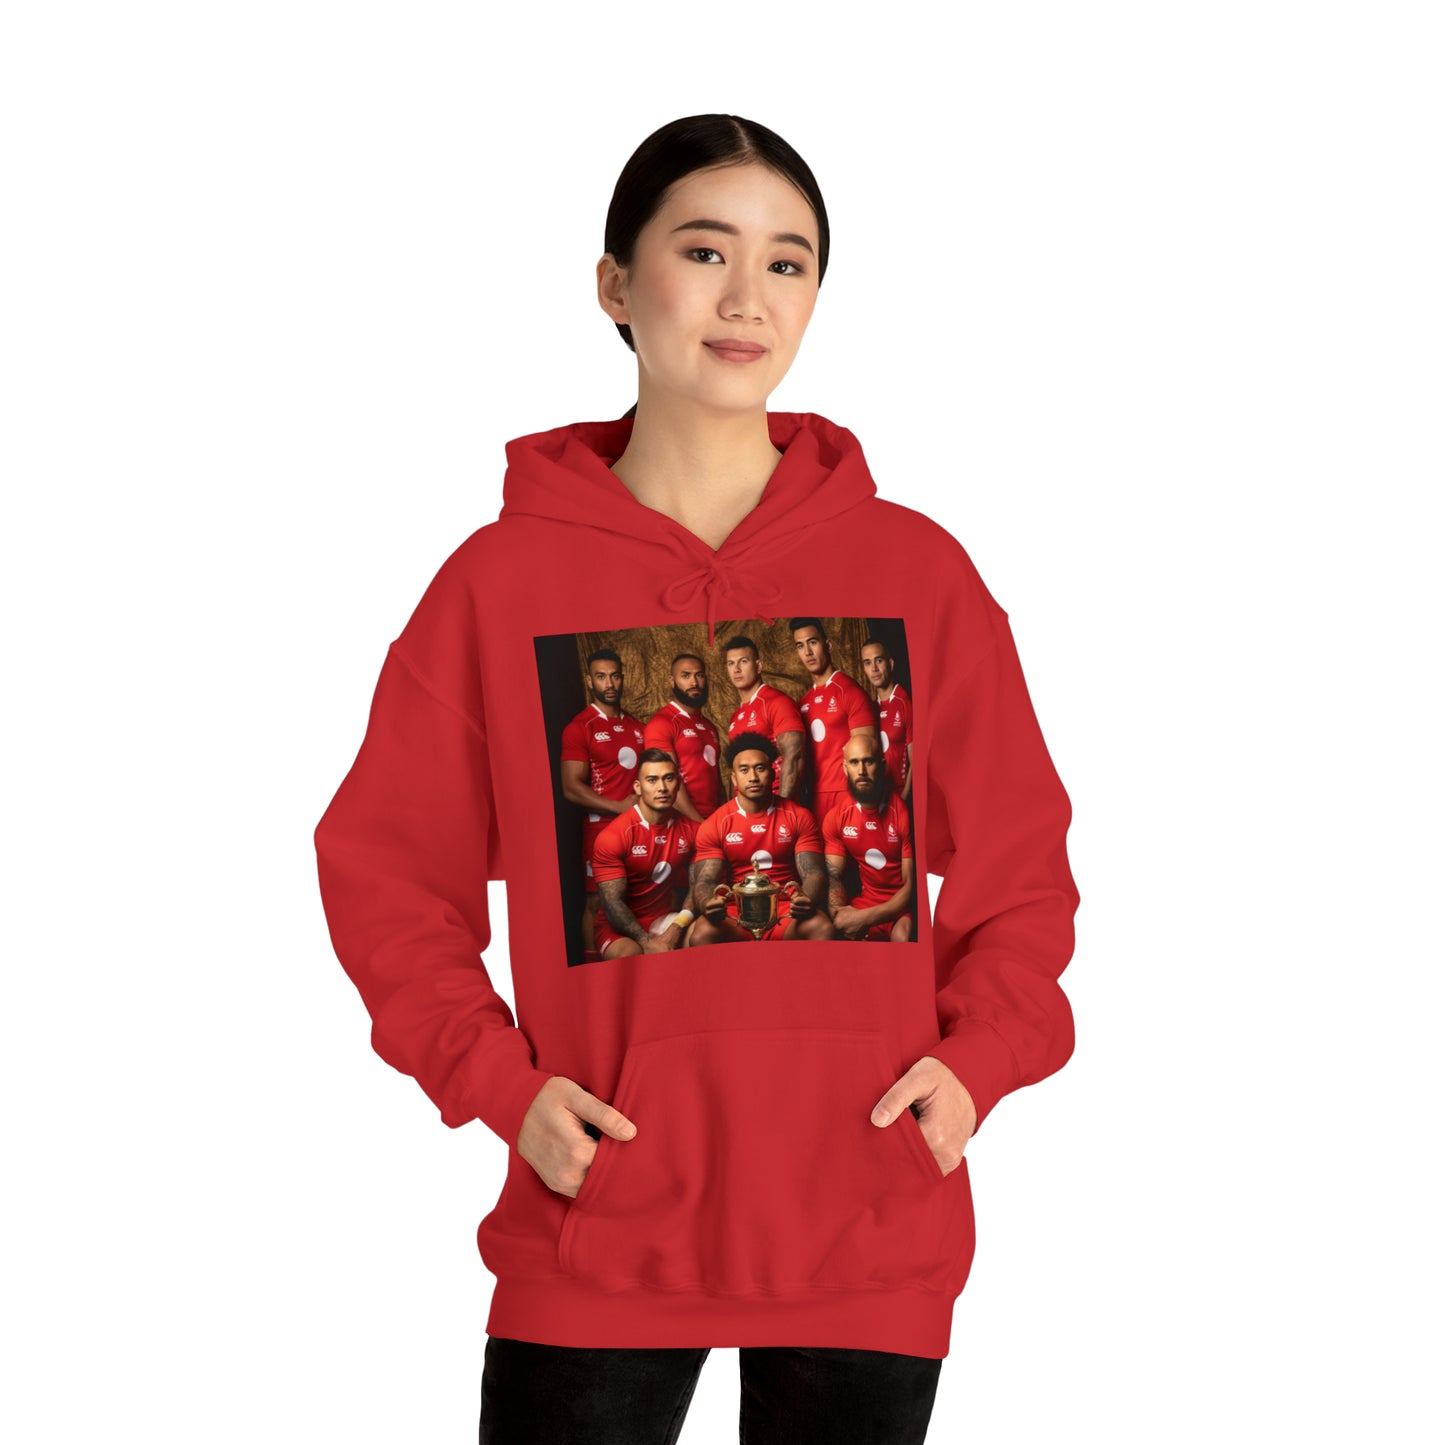 Tonga RWC photoshoot - dark hoodies